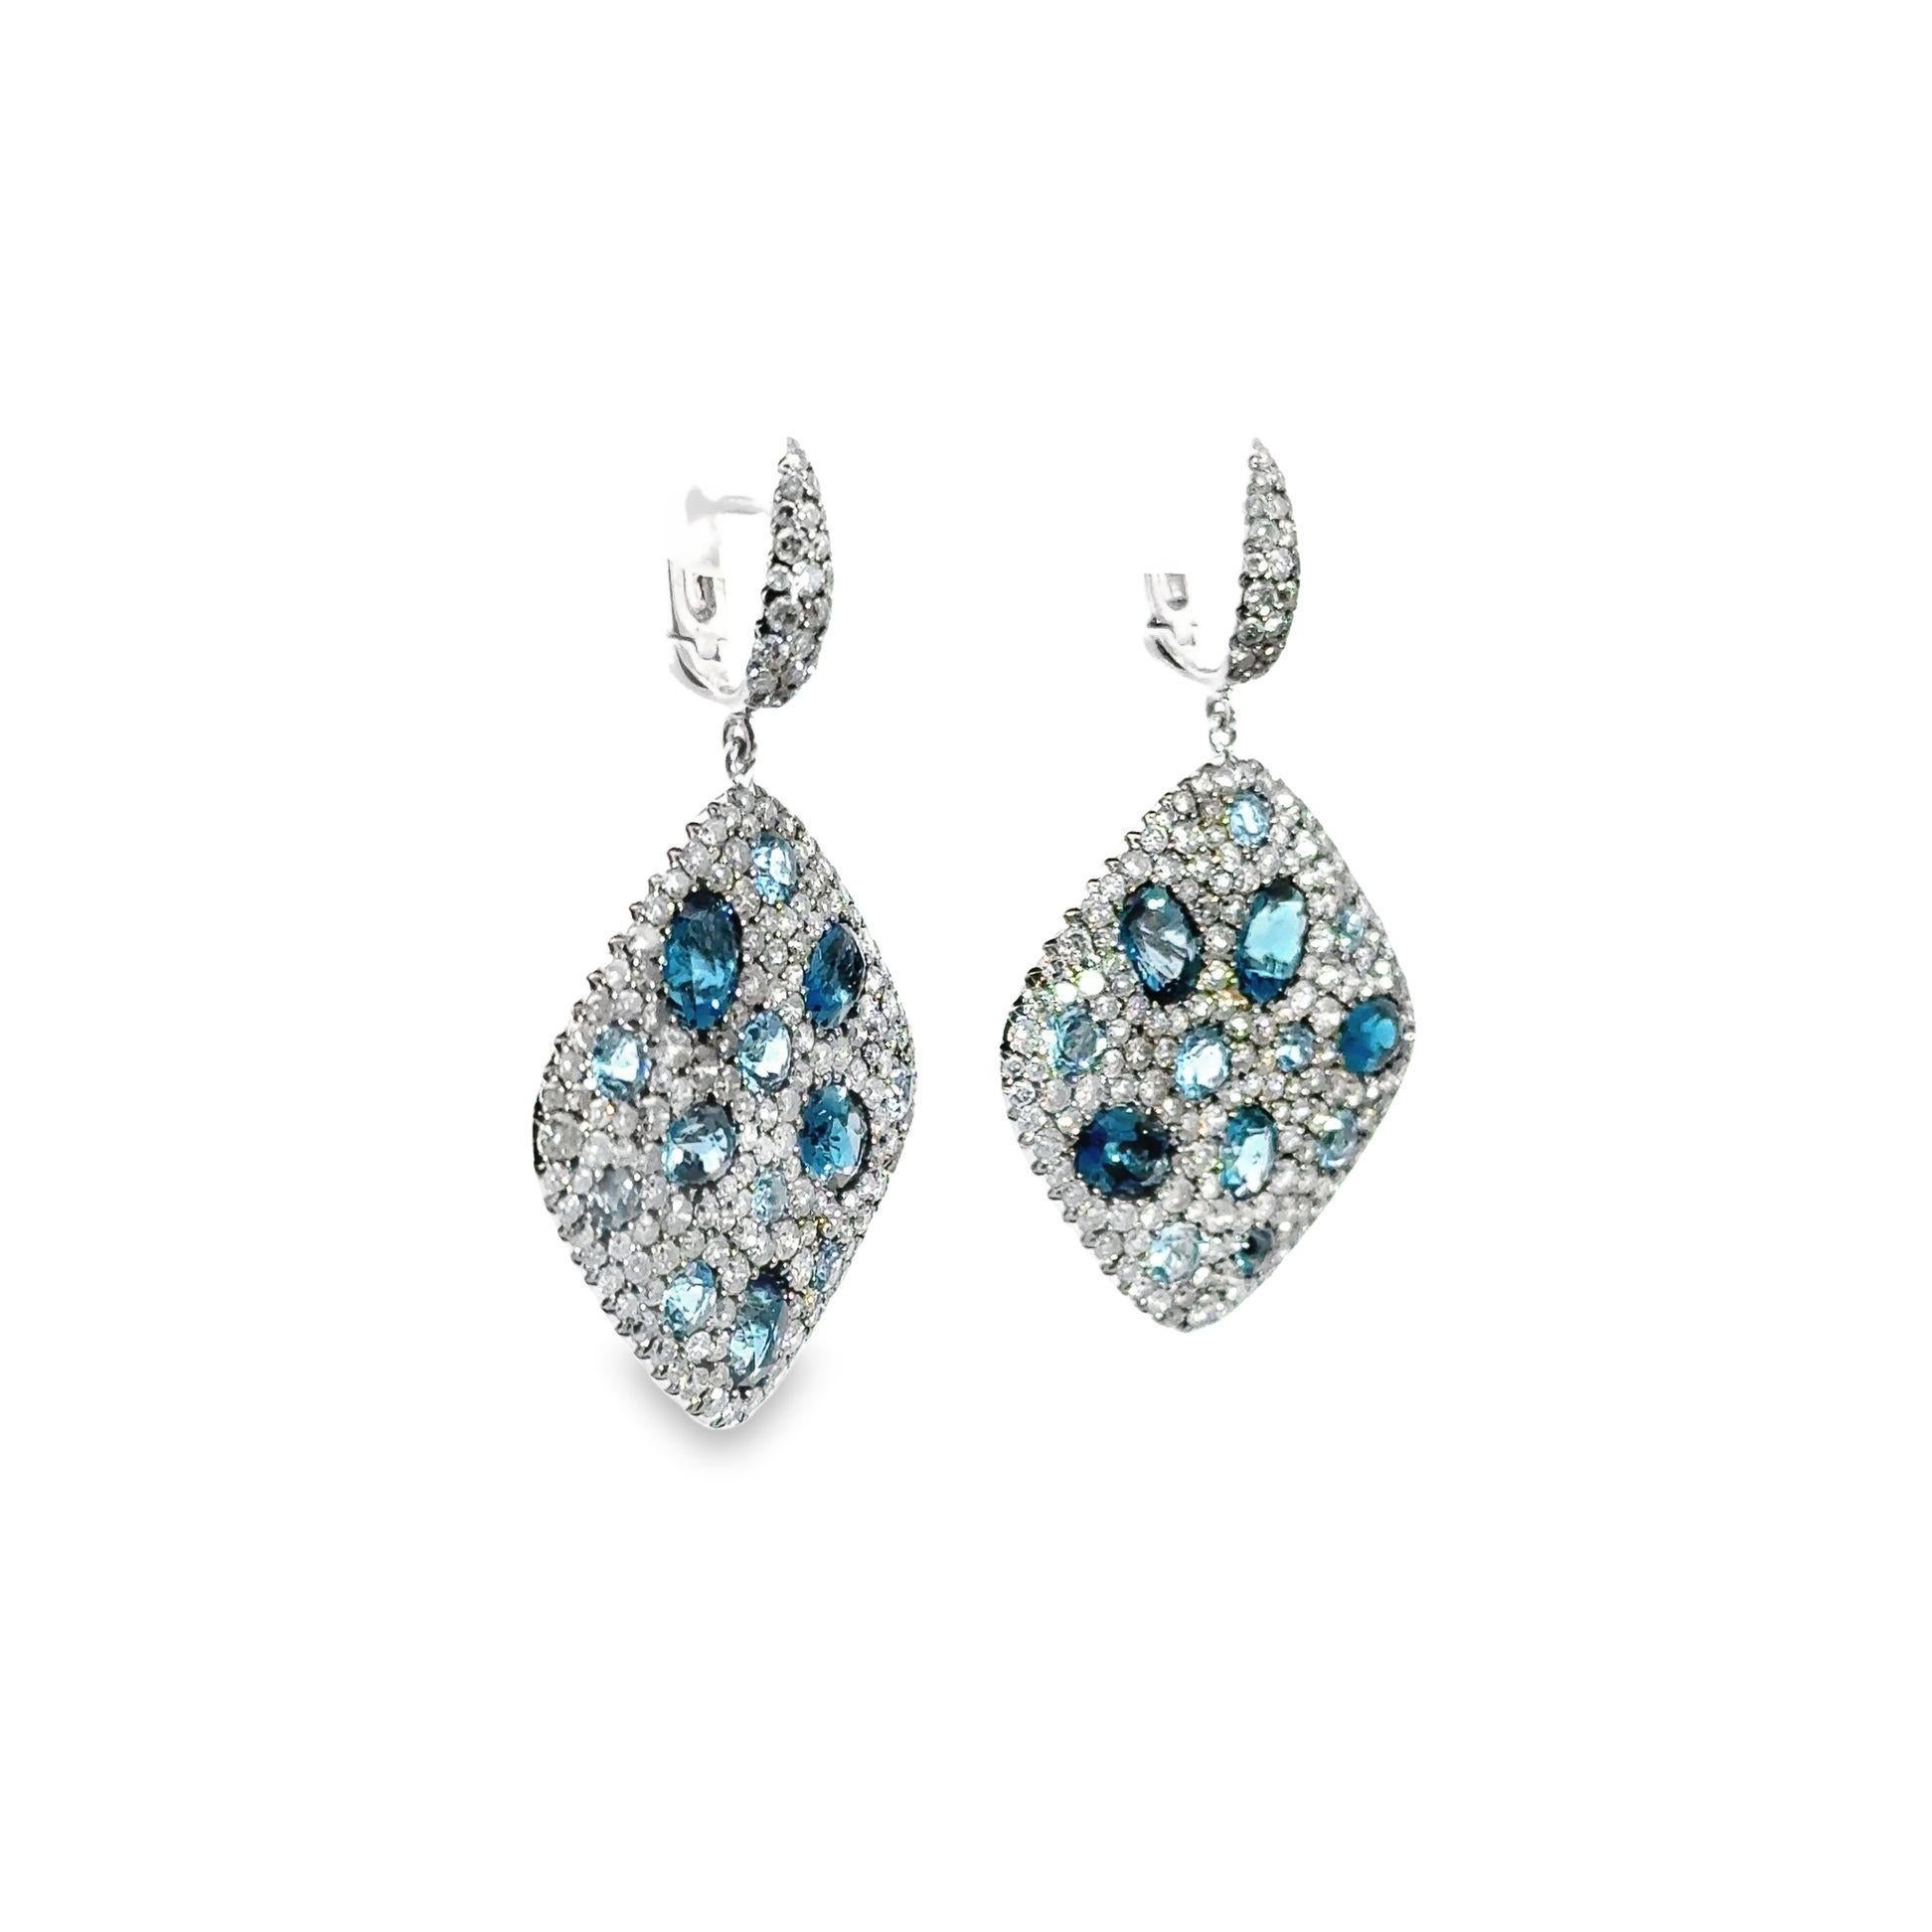 Schmücken Sie sich mit diesen exquisiten blauen Ohrringen, die mit 7,75 Karat schillernden Diamanten im Rundschliff besetzt sind. Der tiefe Farbton des blauen Topas mit einem Gewicht von 9,70 Karat sorgt für eine fesselnde Dynamik, die die Blicke